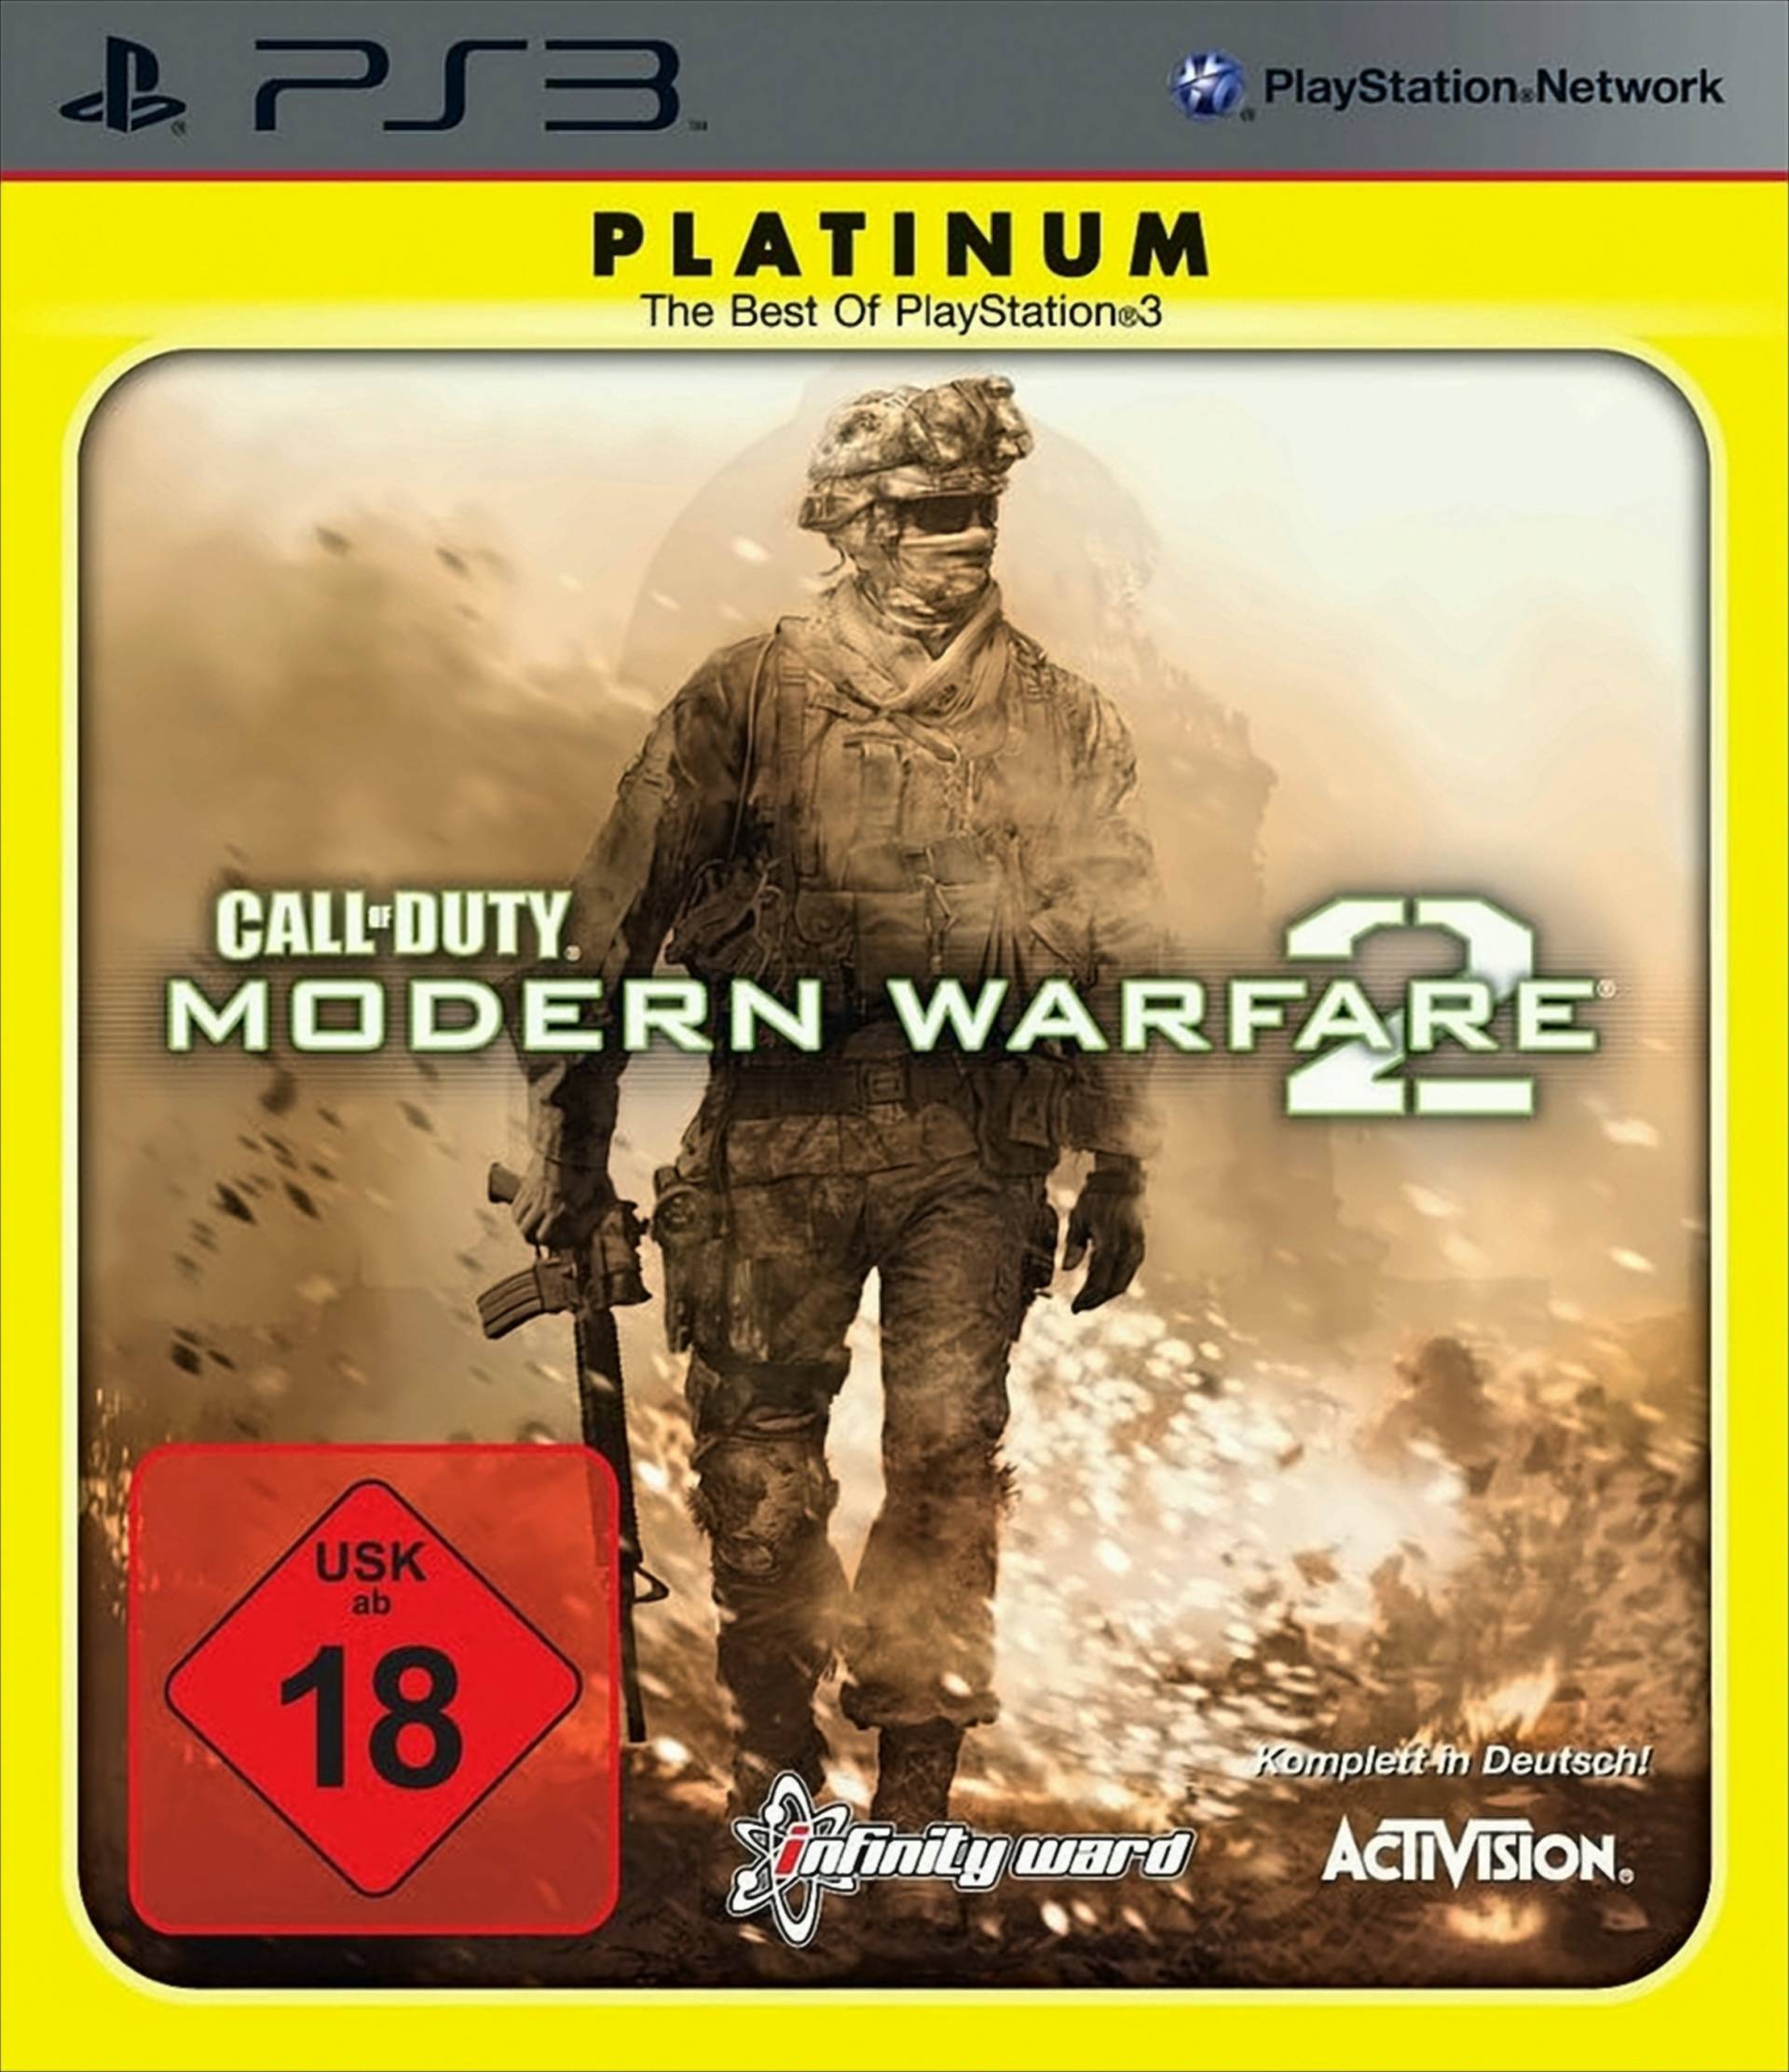 Call Of Duty: Modern Warfare 2 von Activision Blizzard